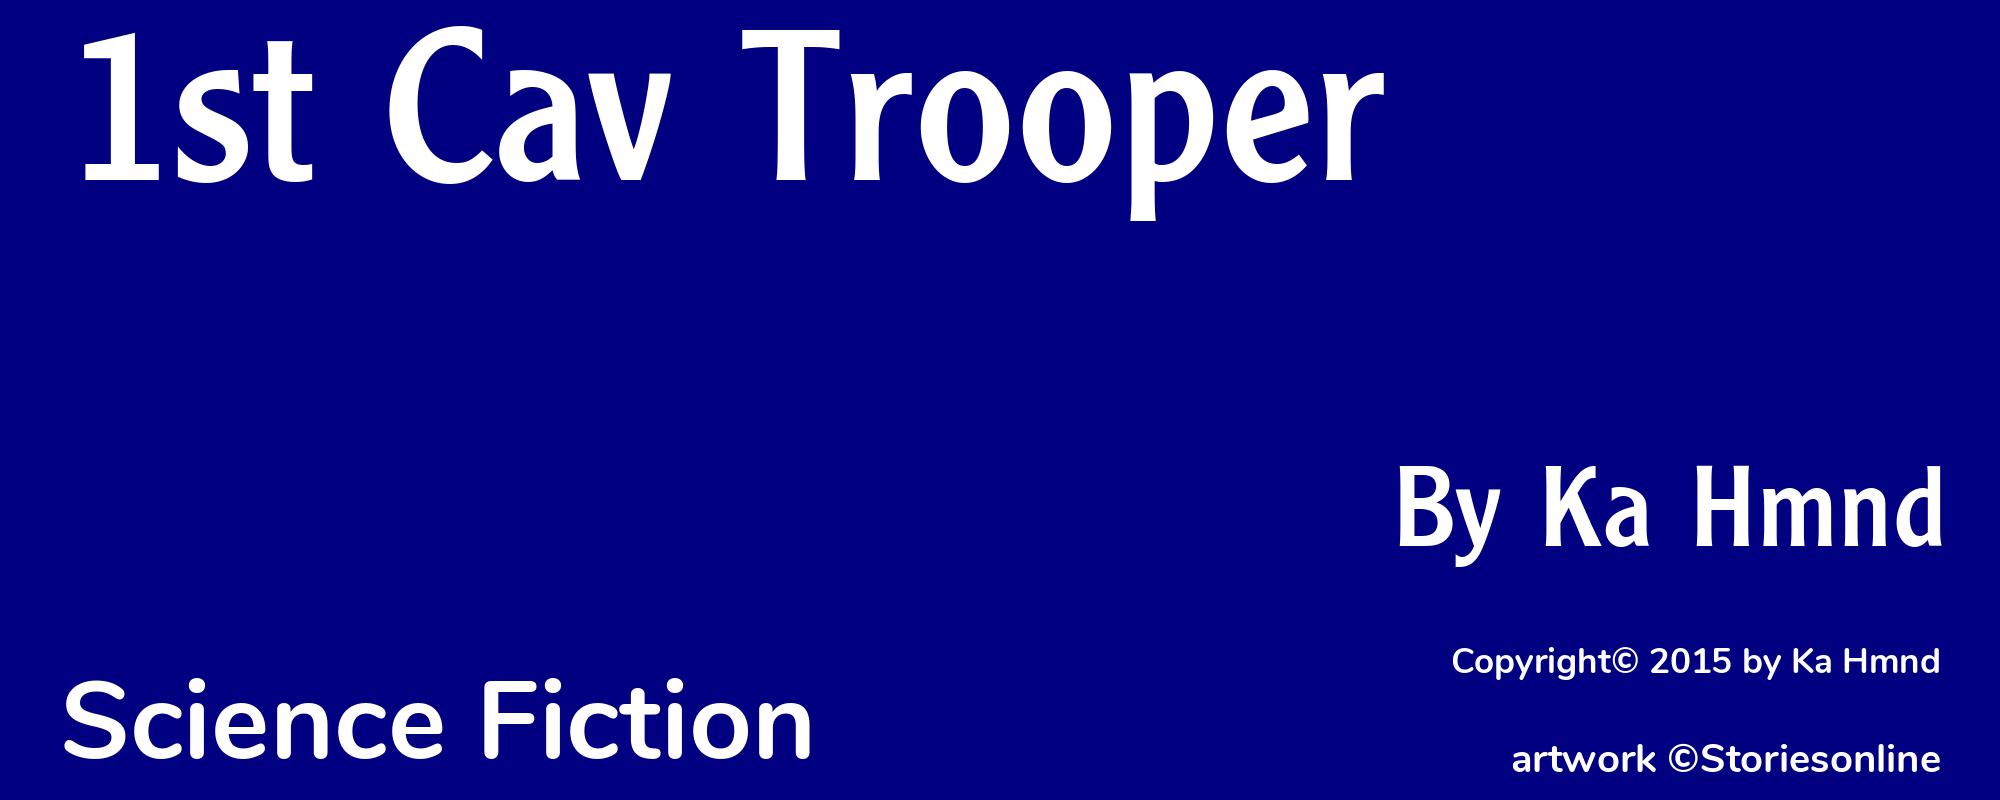 1st Cav Trooper - Cover